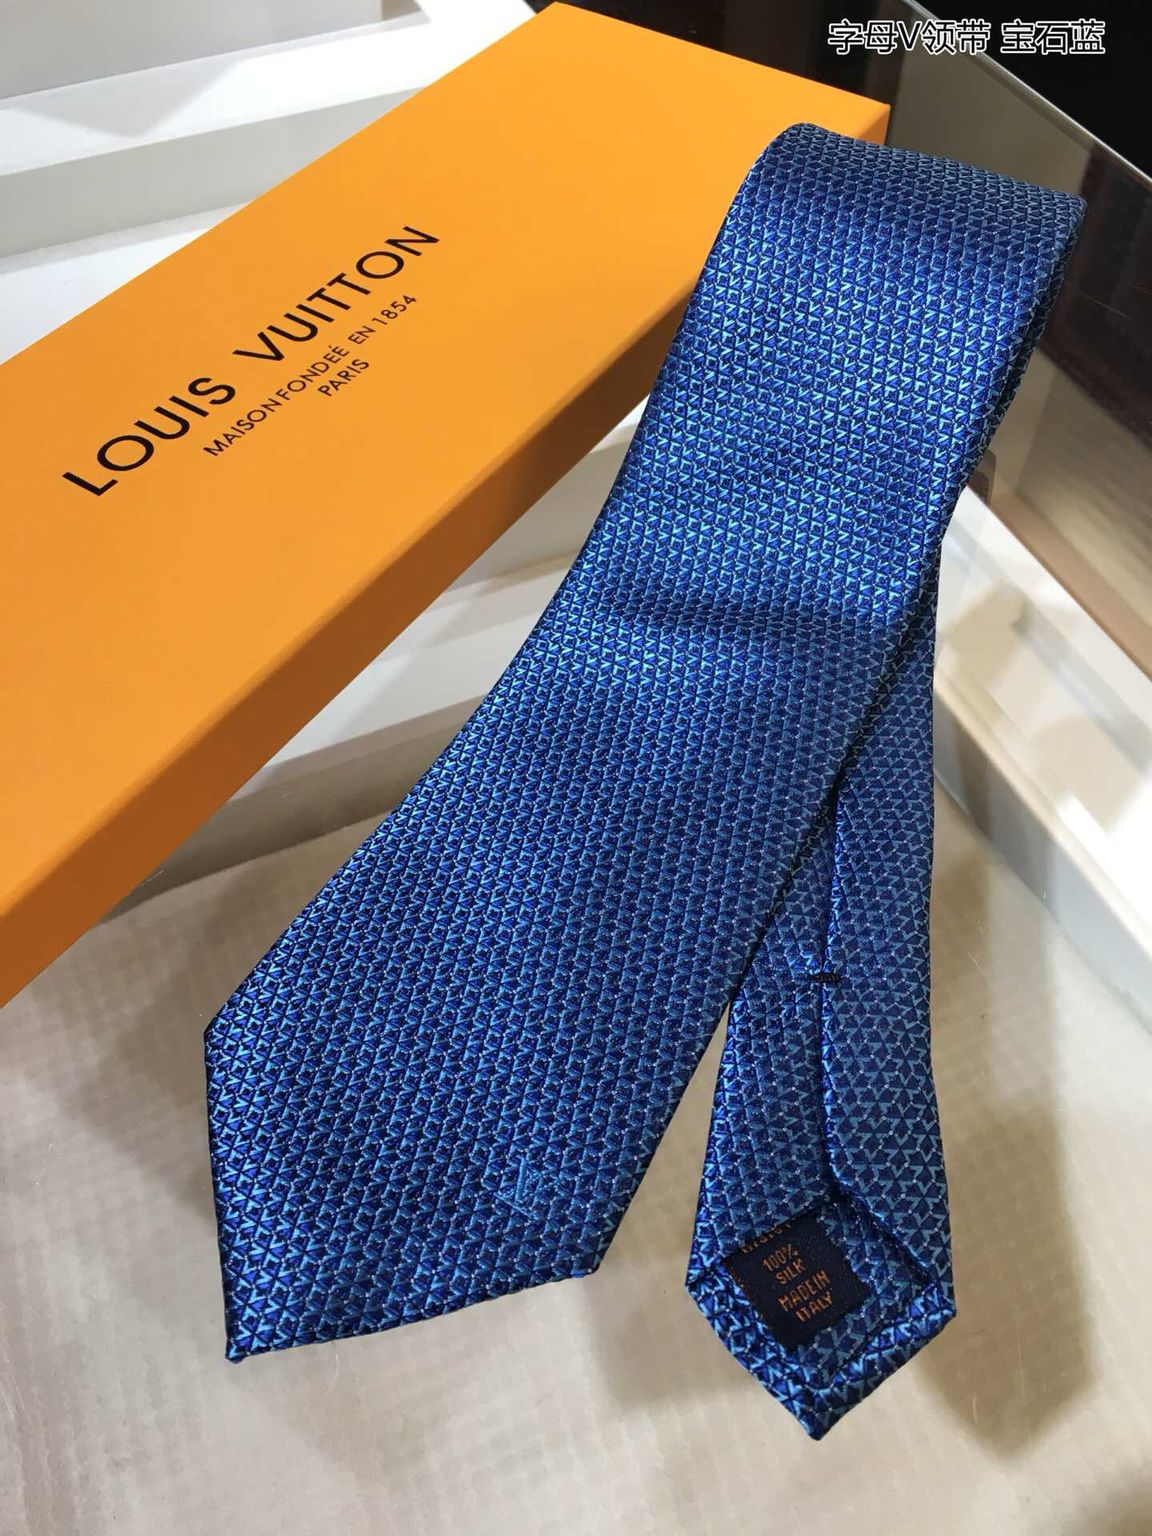 原版LV男款领带 LV领带 LV路易威登100%顶级提花真丝字母V领带 LV男款领带 